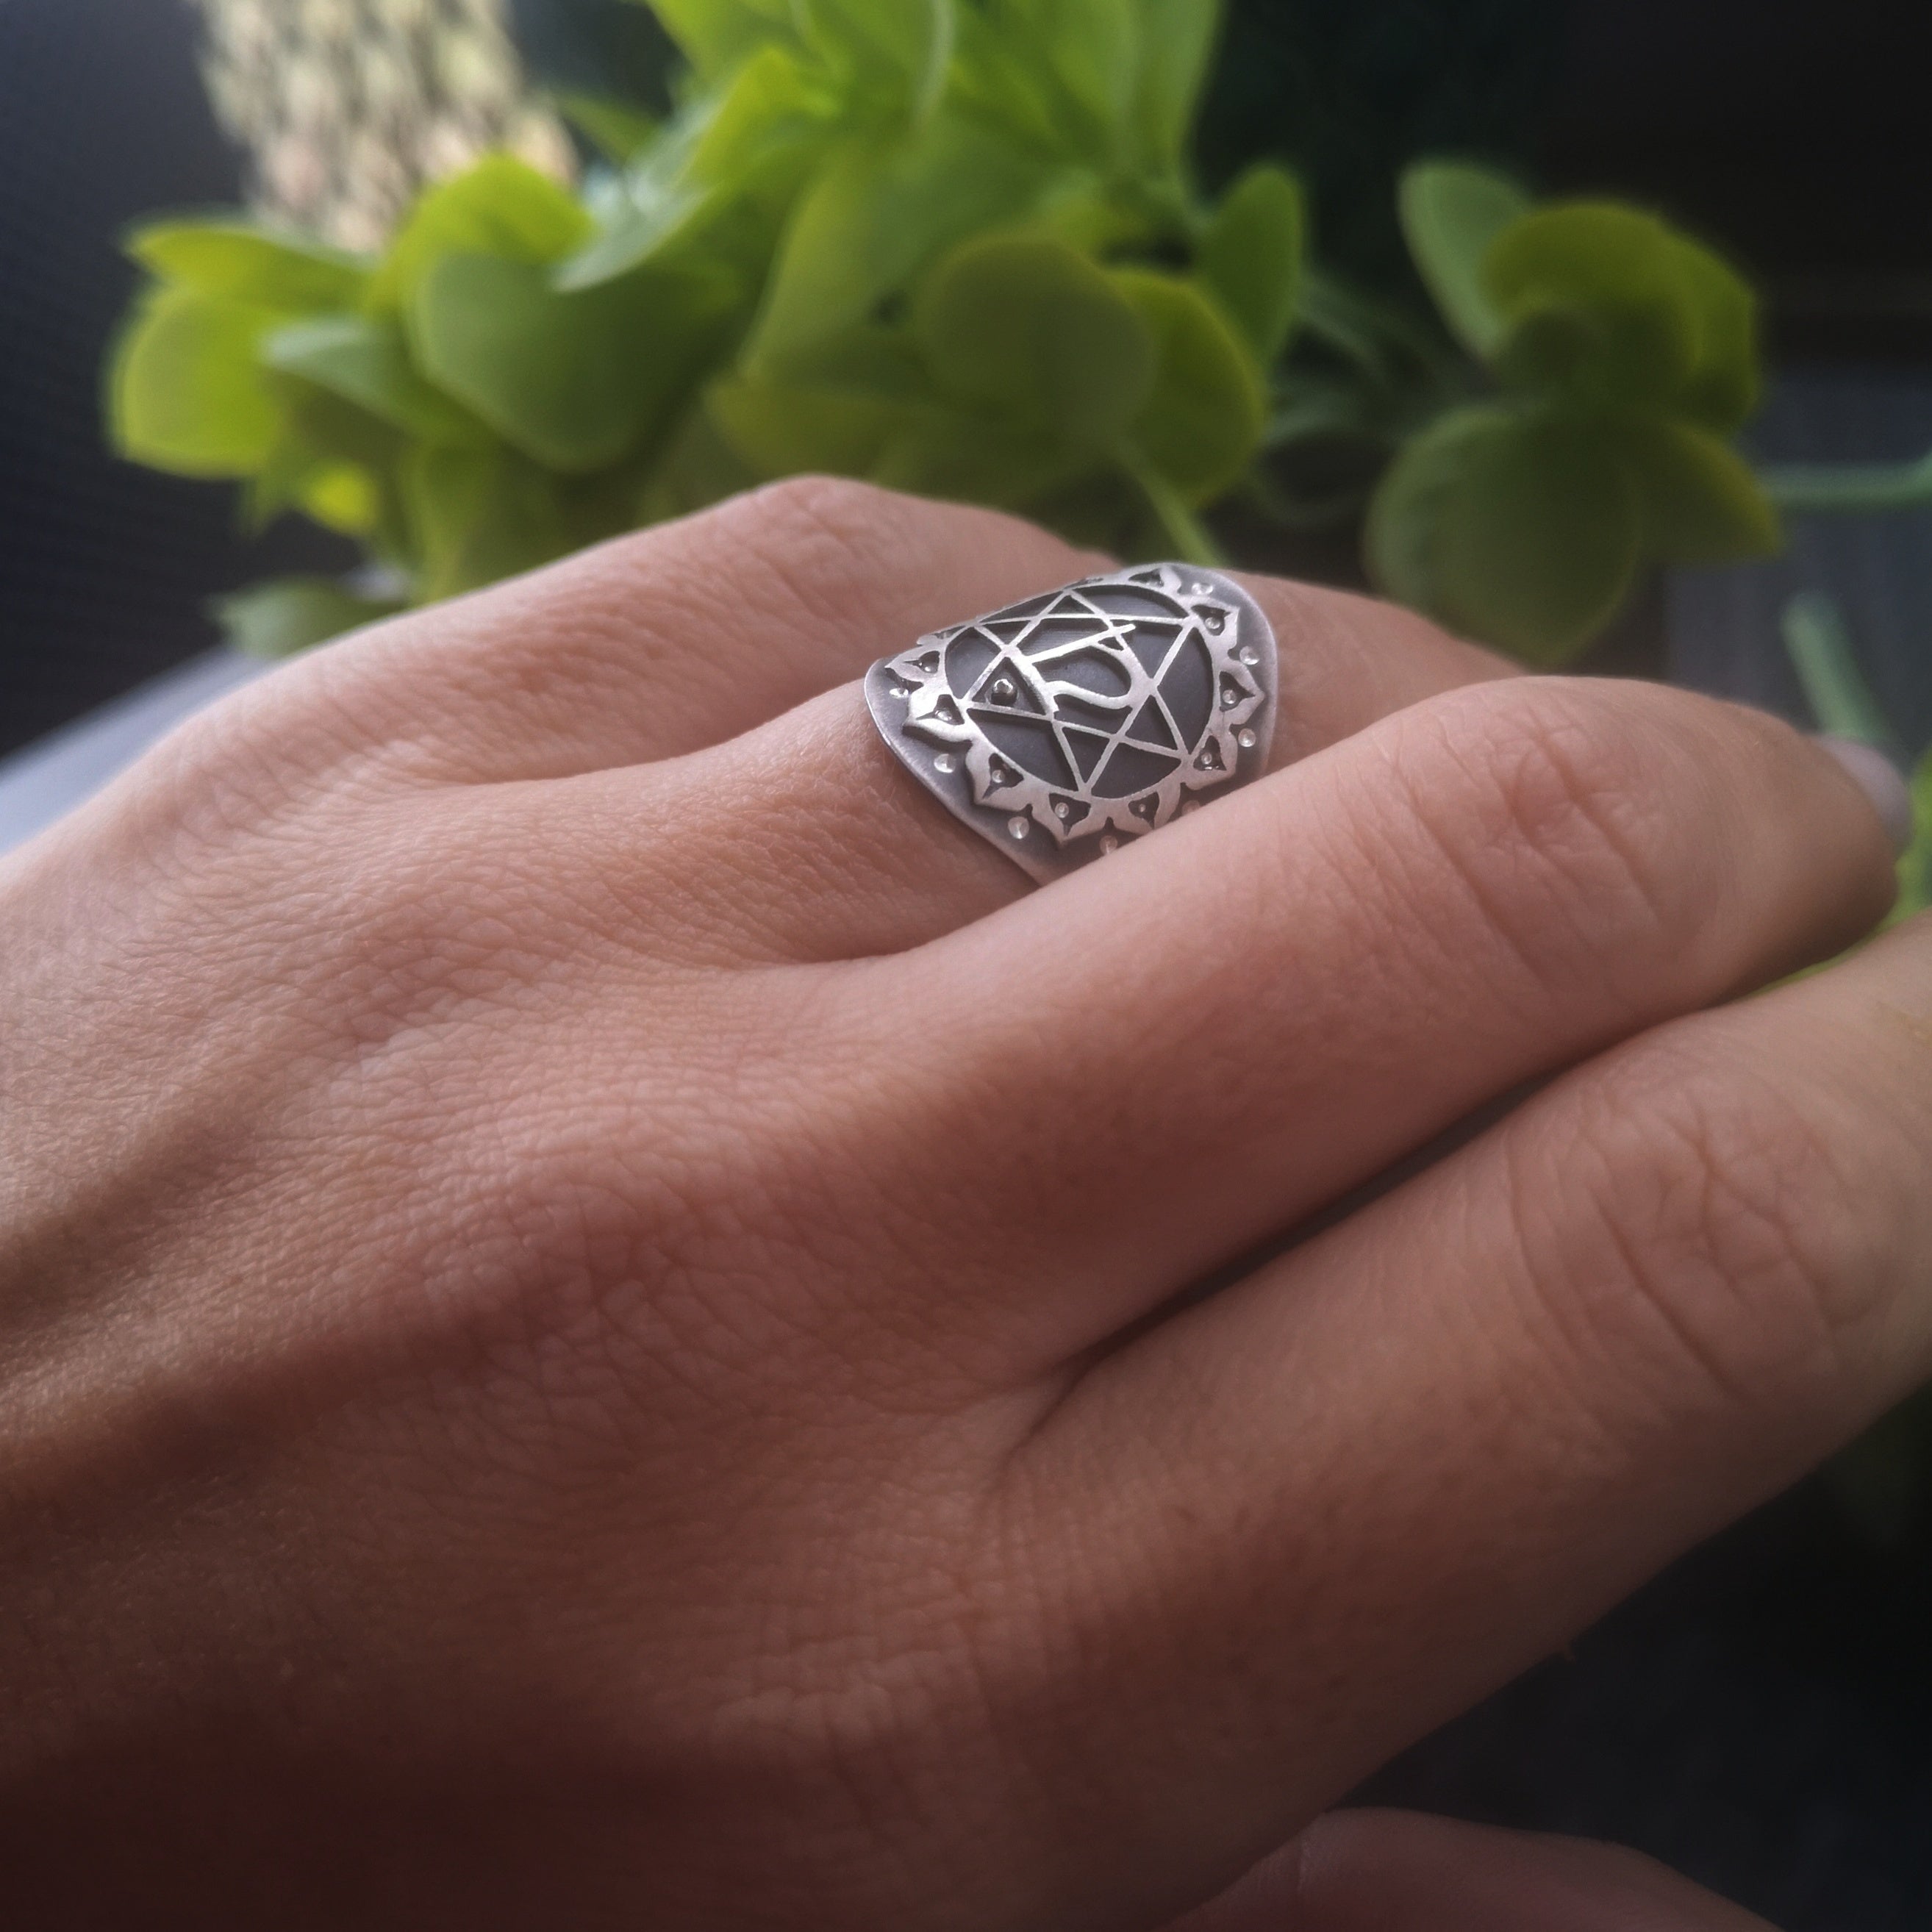 The Heart Chakra Ring